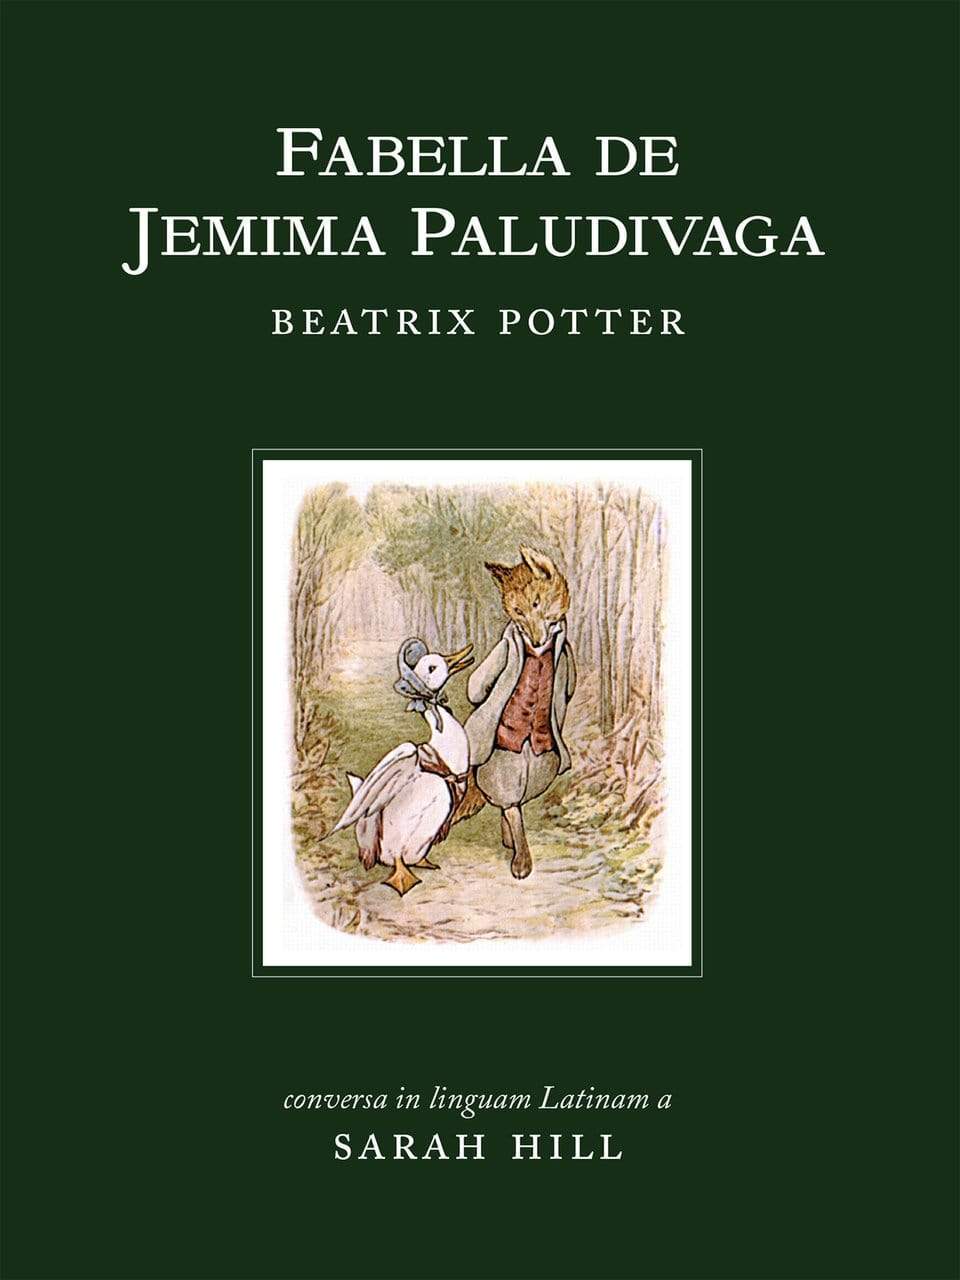 Beatrix Potter - Wikipedia, la enciclopedia libre